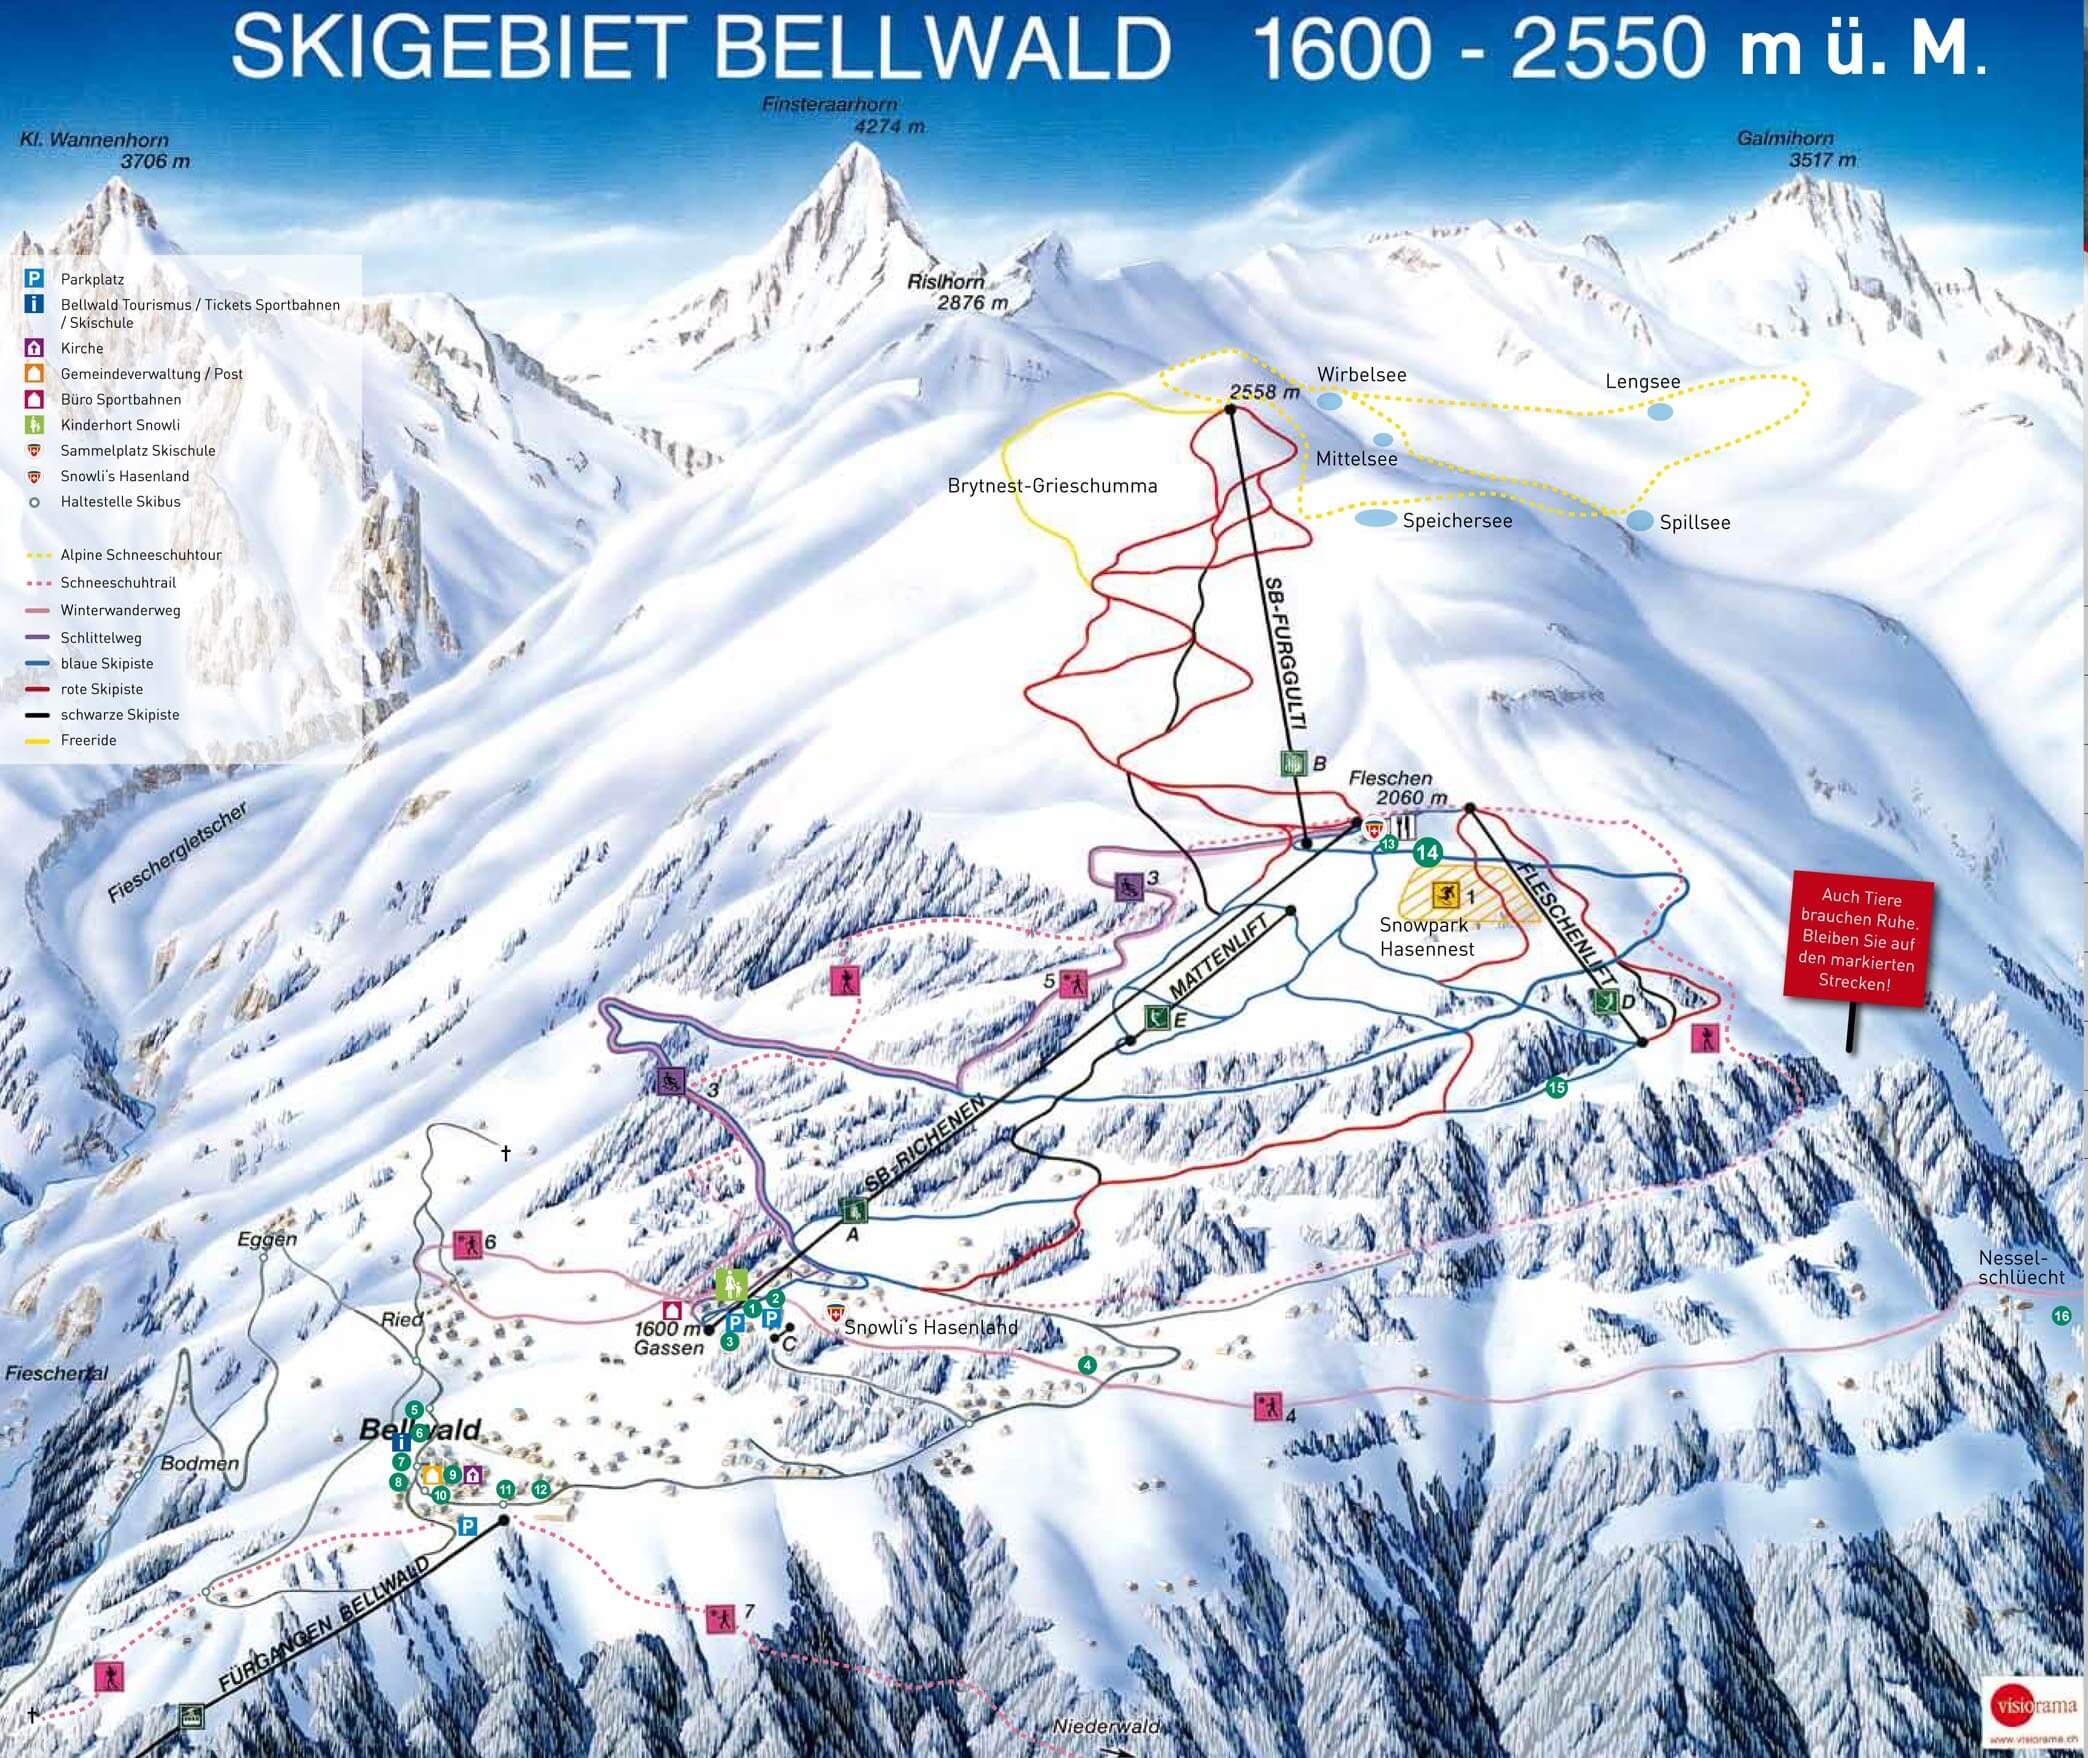 Bellwald slopes